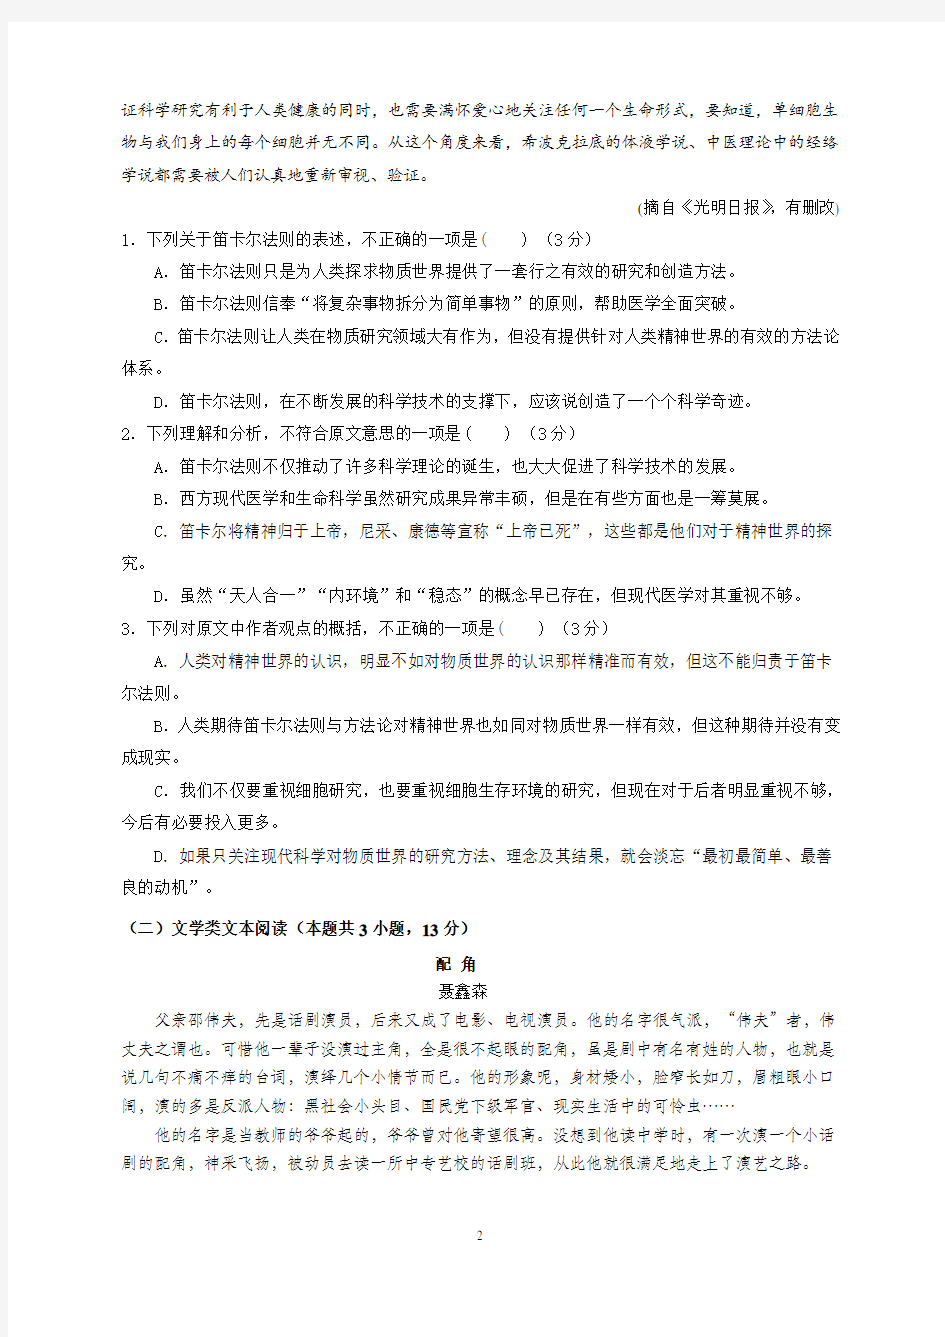 2019年湖北省高考语文模拟试题与答案